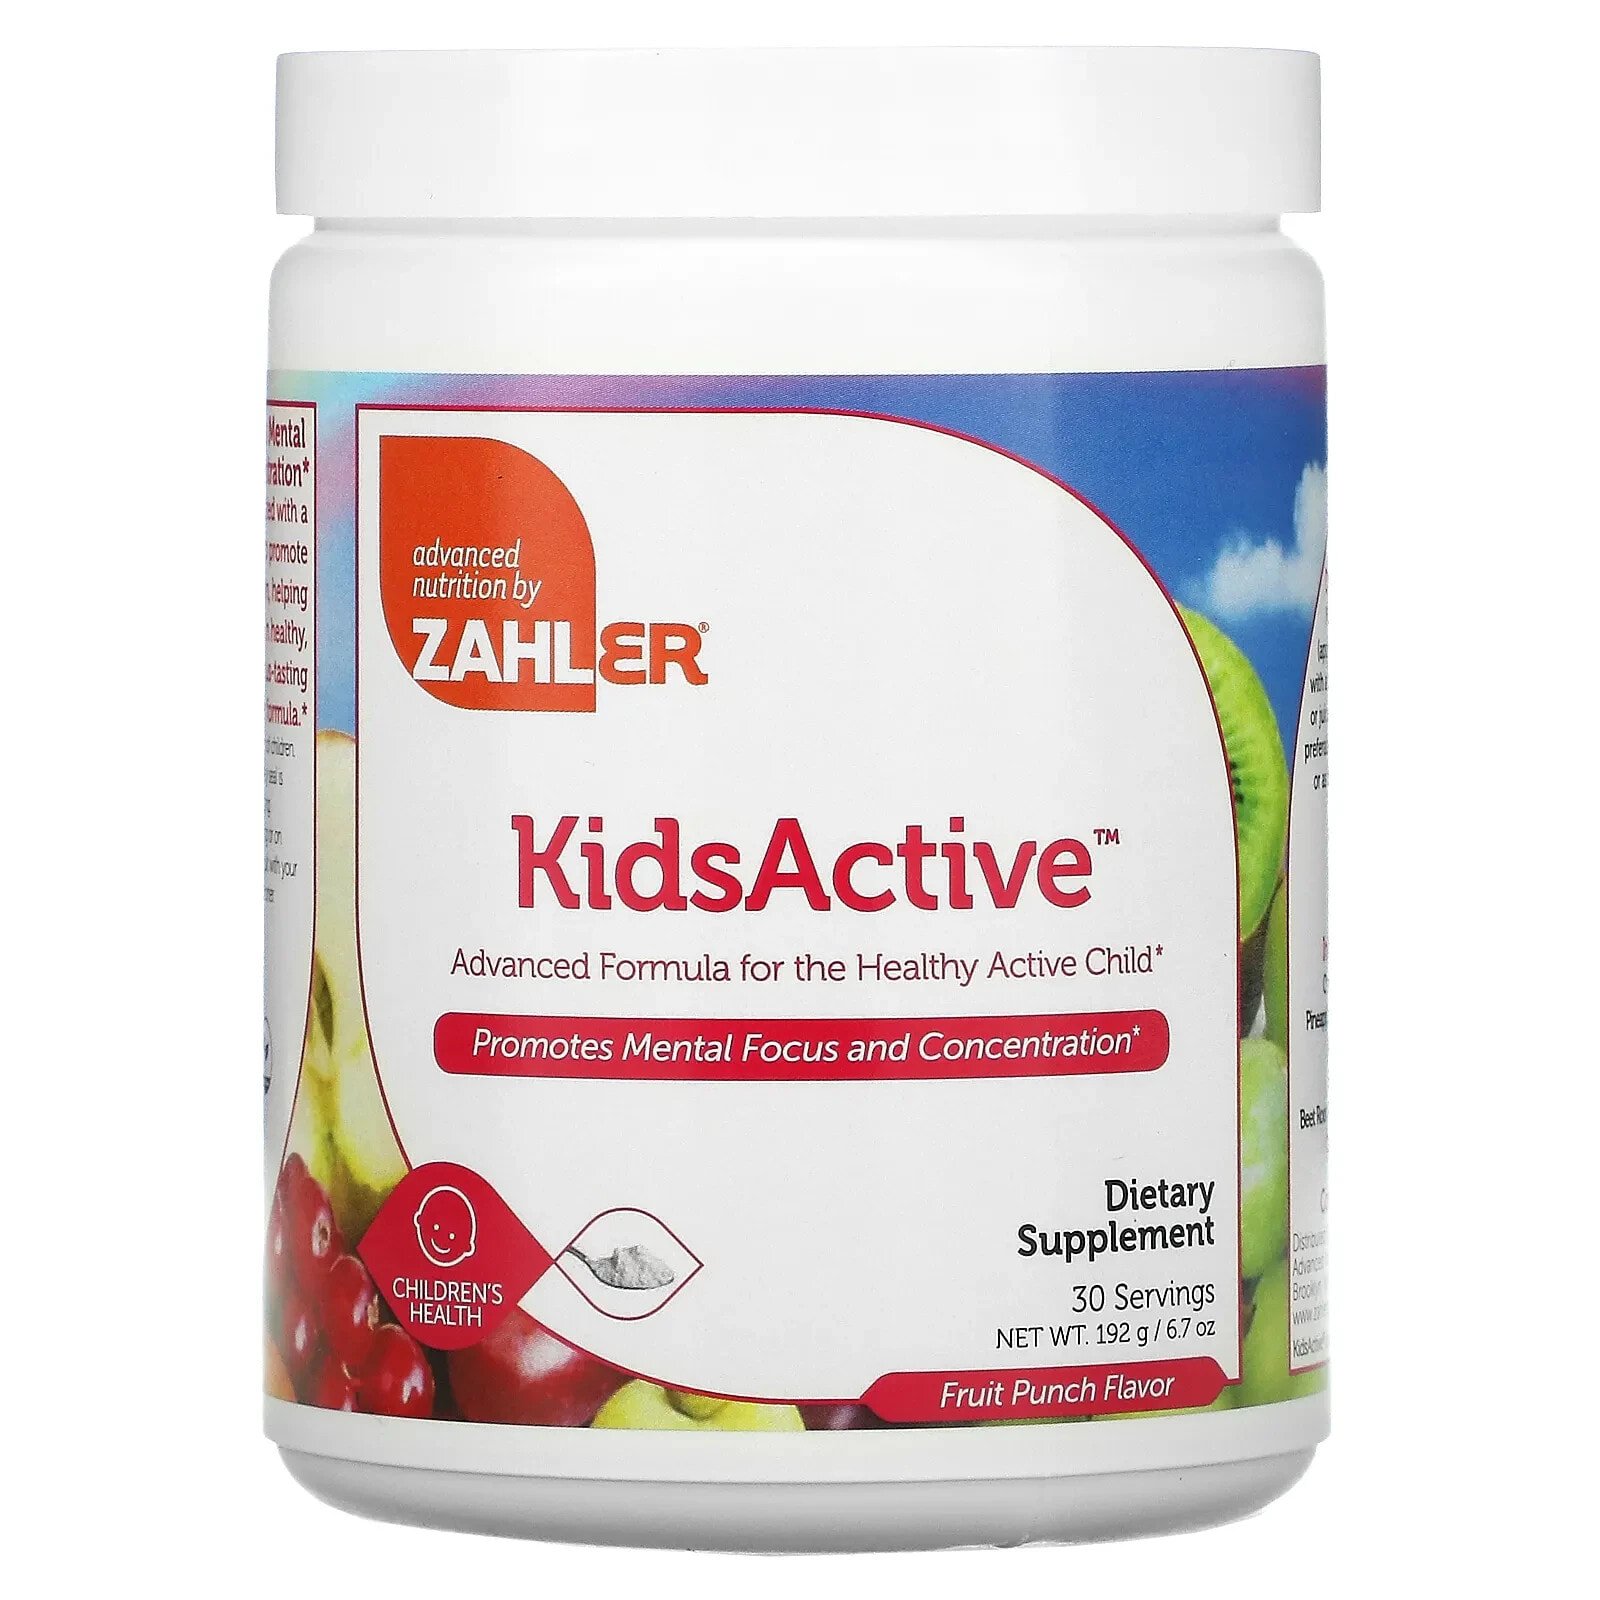 Залер, Kids Active, усовершенствованный состав для здоровья активных детей, фруктовый пунш, 6.7 унций (192 г)